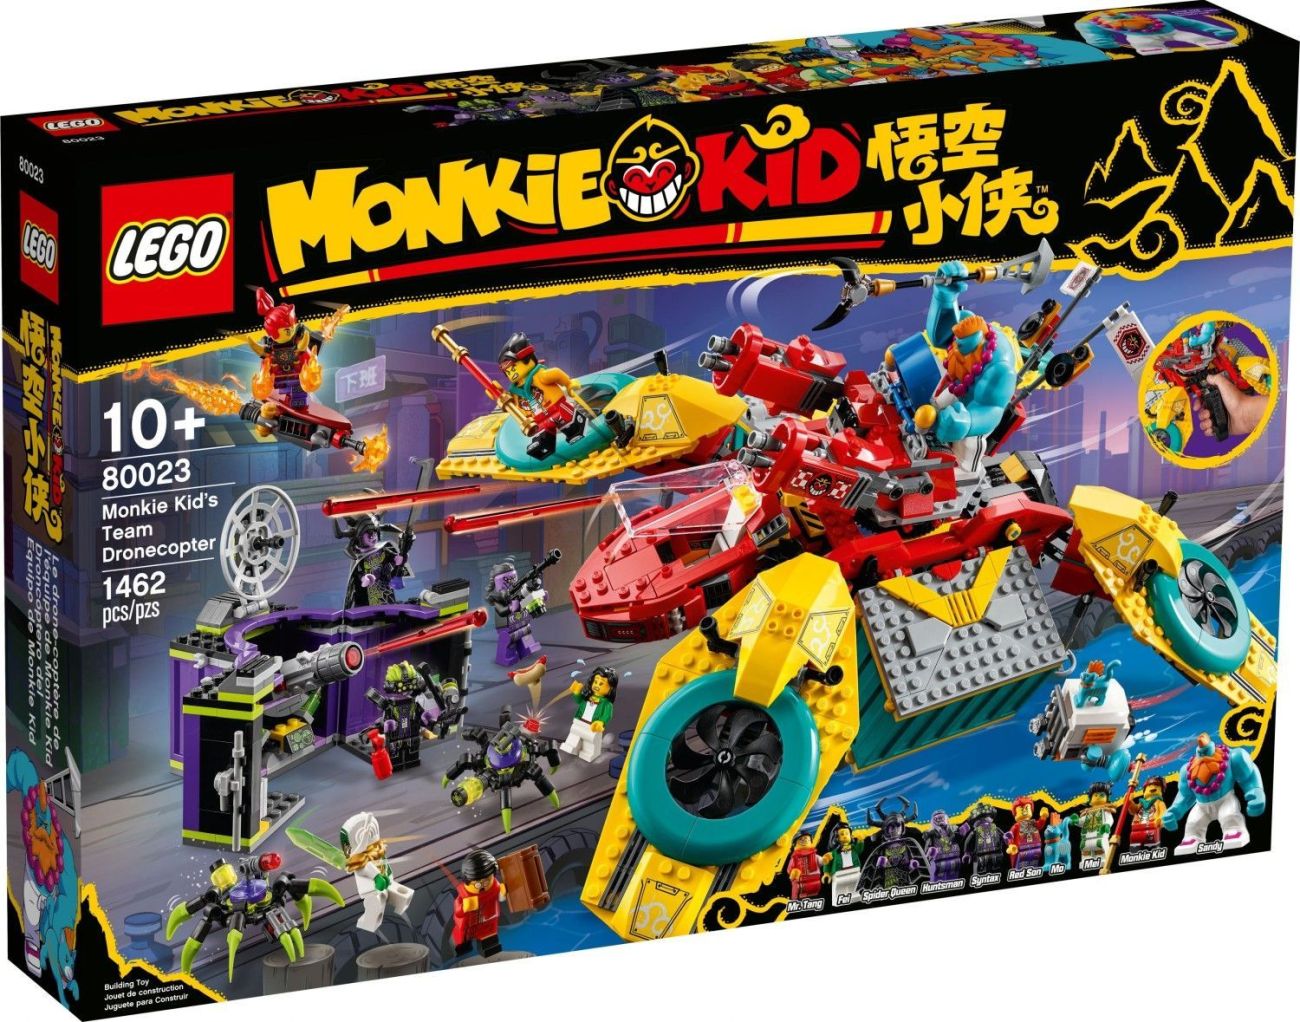 LEGO Monkie Kid 2021: Offizielle Bilder der März Neuheiten